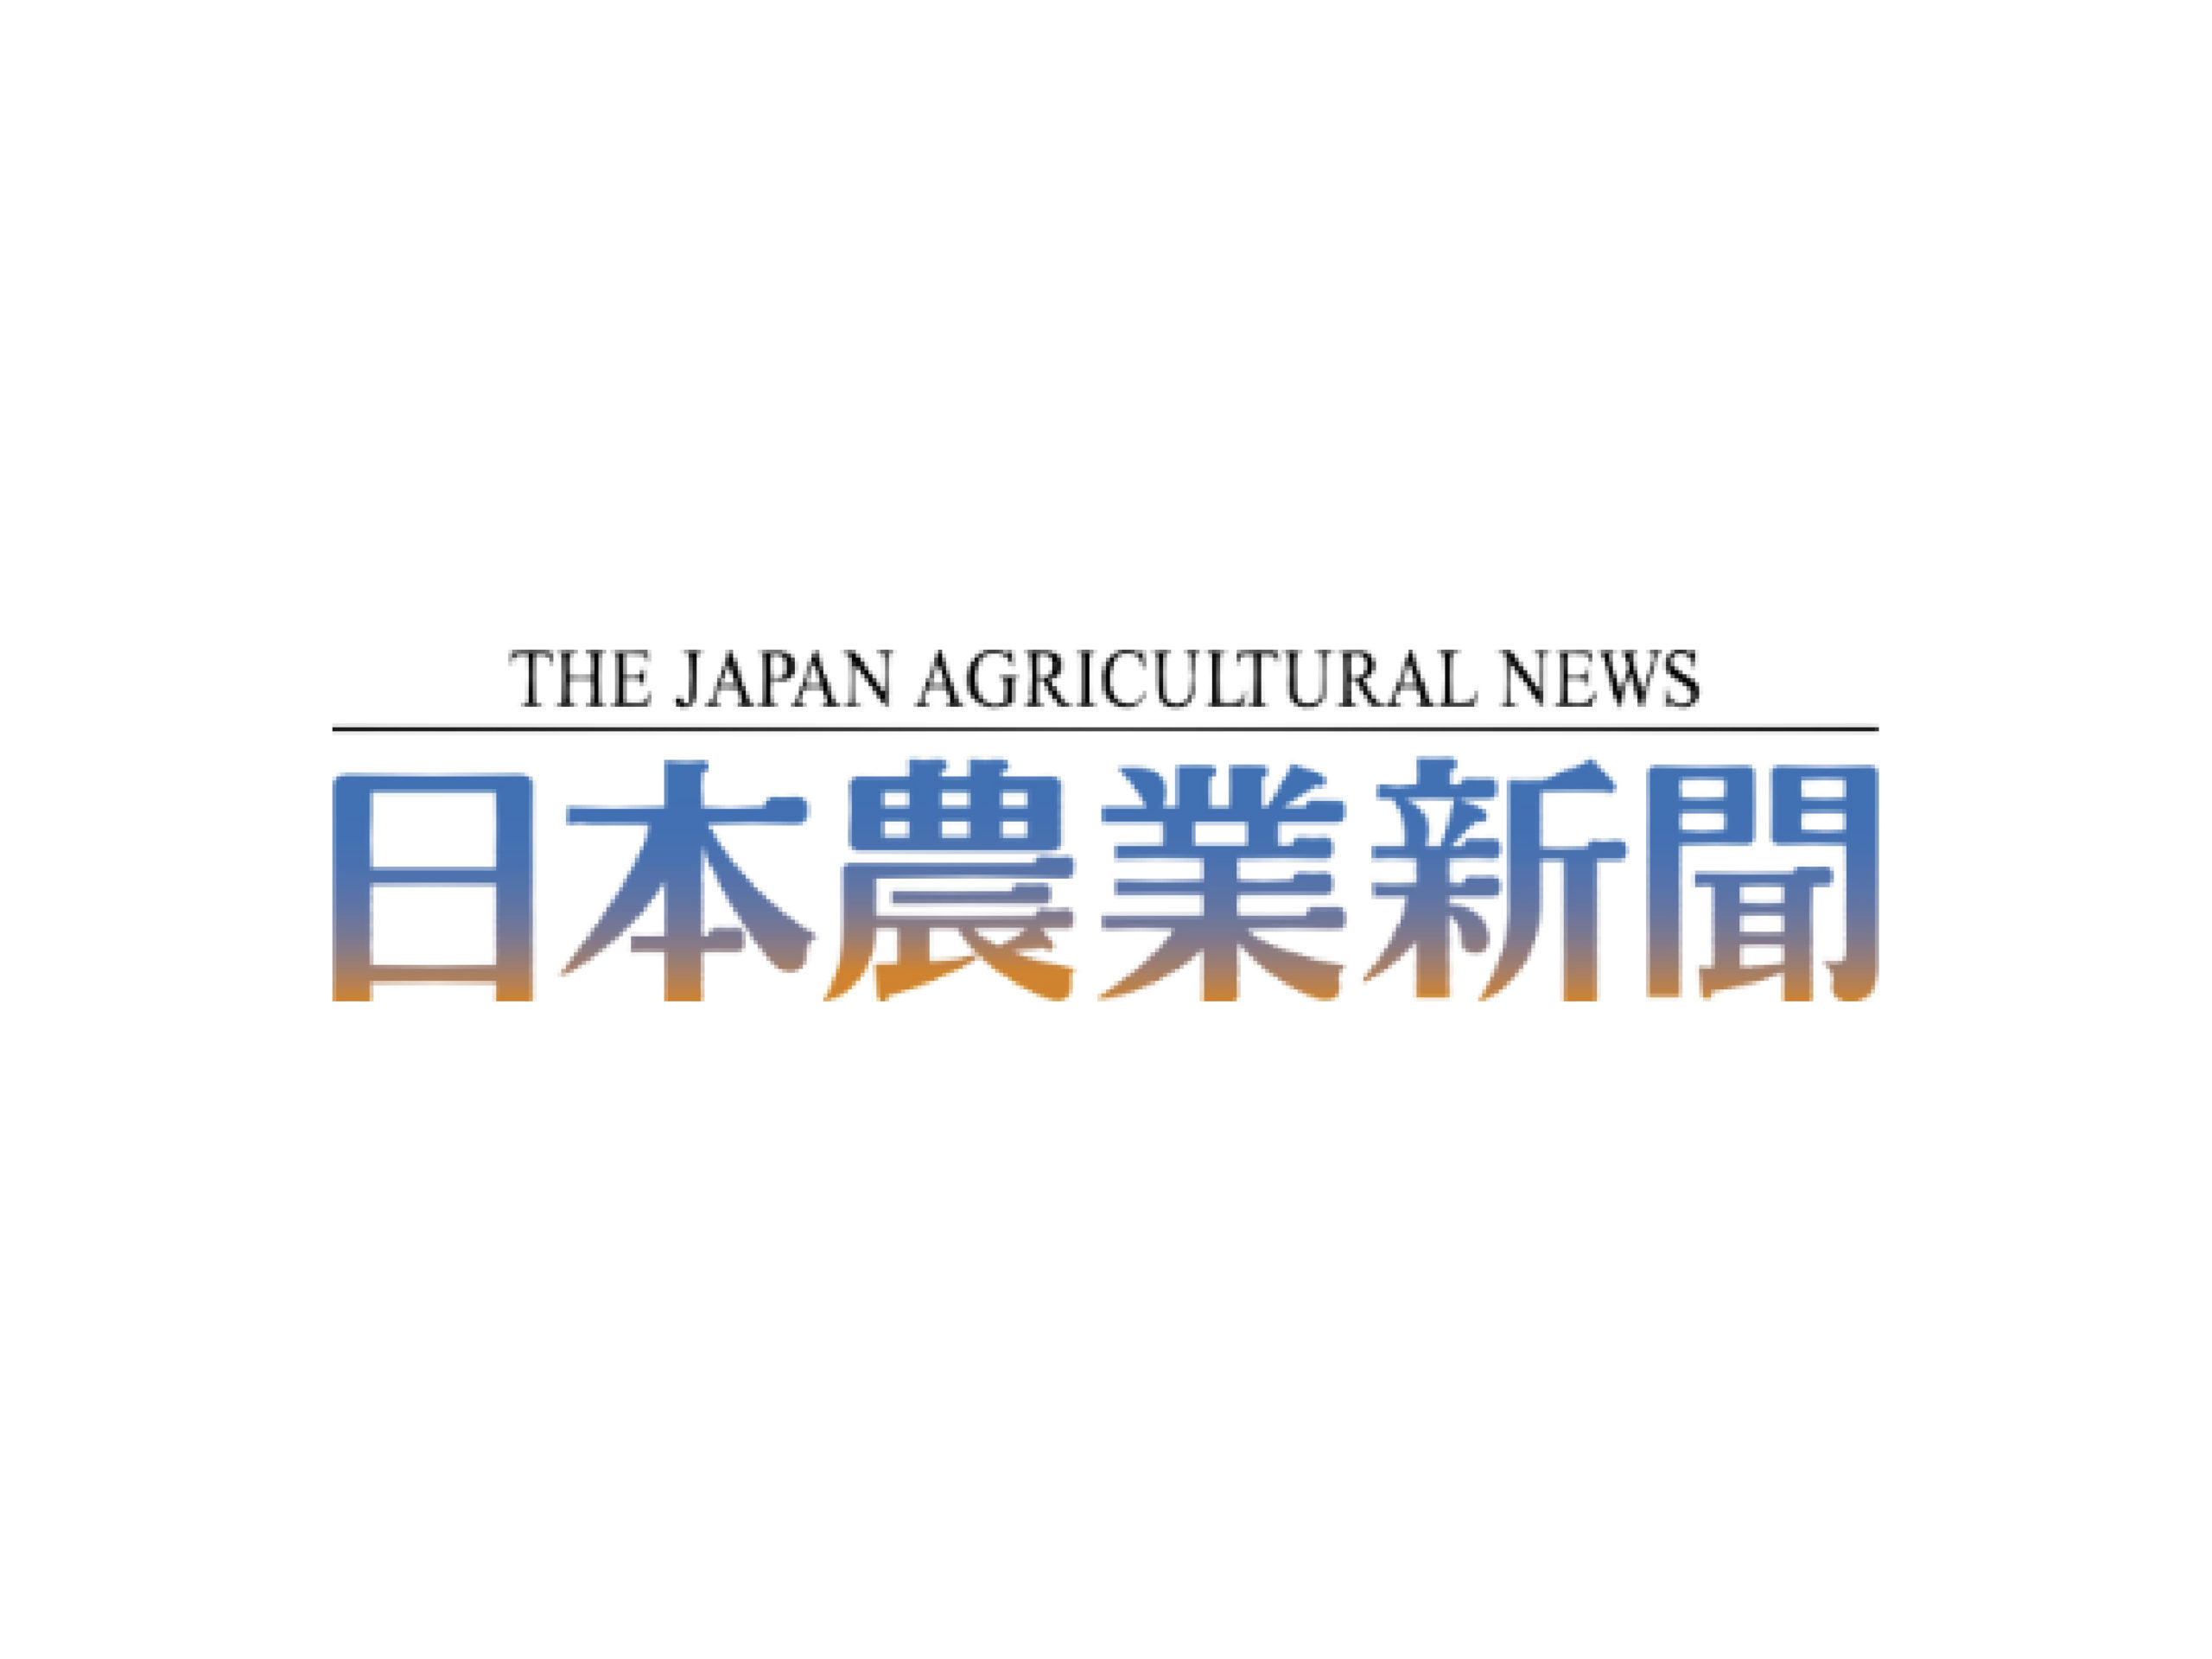 【執筆】日本農業新聞にて代表武藤による5年目の連載がスタートしました。のサムネイル